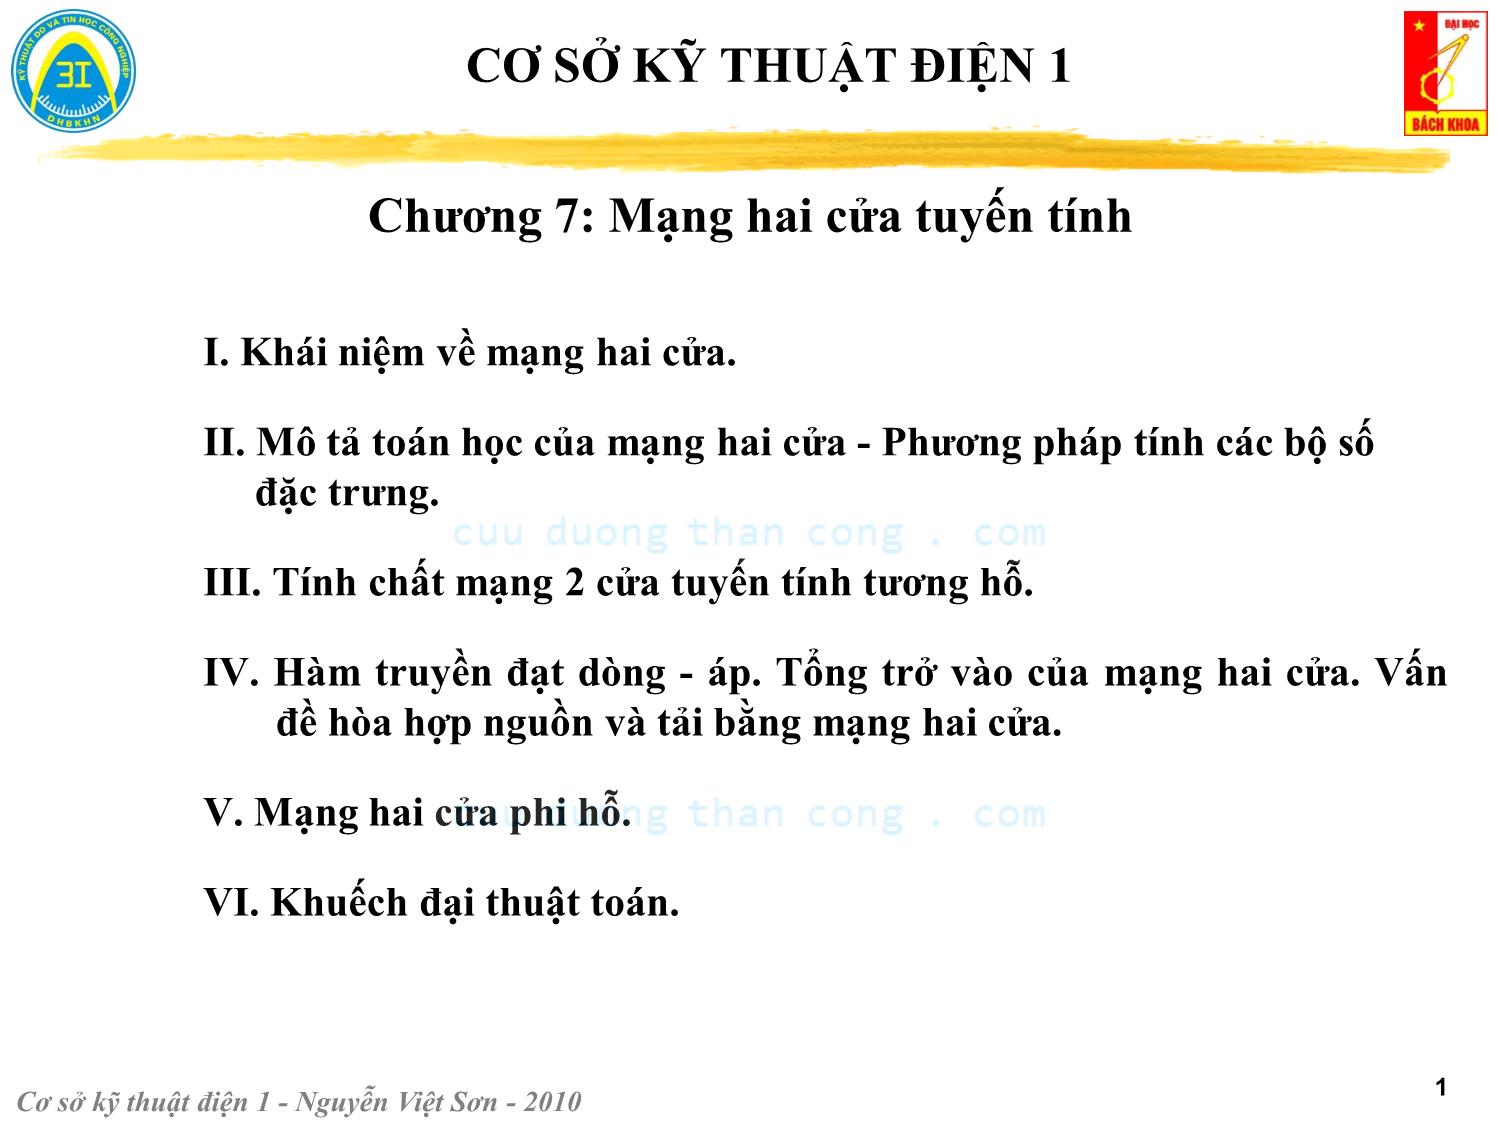 Bài giảng Kỹ thuật điện 1 - Chương 7: Mạng hai cửa tuyến tính - Nguyễn Việt Sơn trang 1